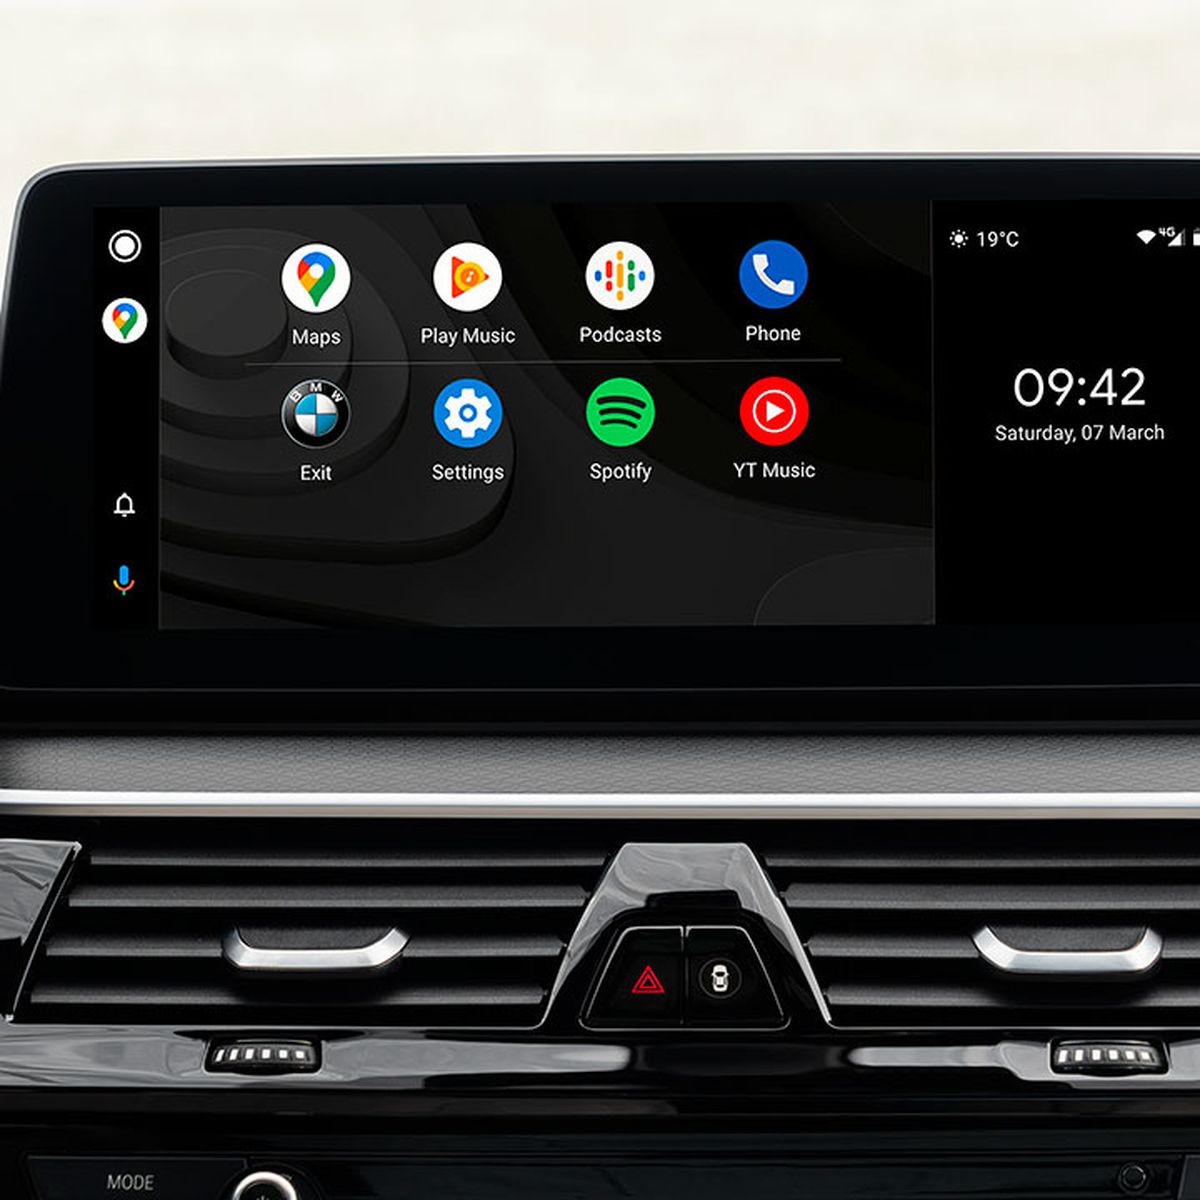 Android Auto sin cables en tu coche aunque no sea compatible